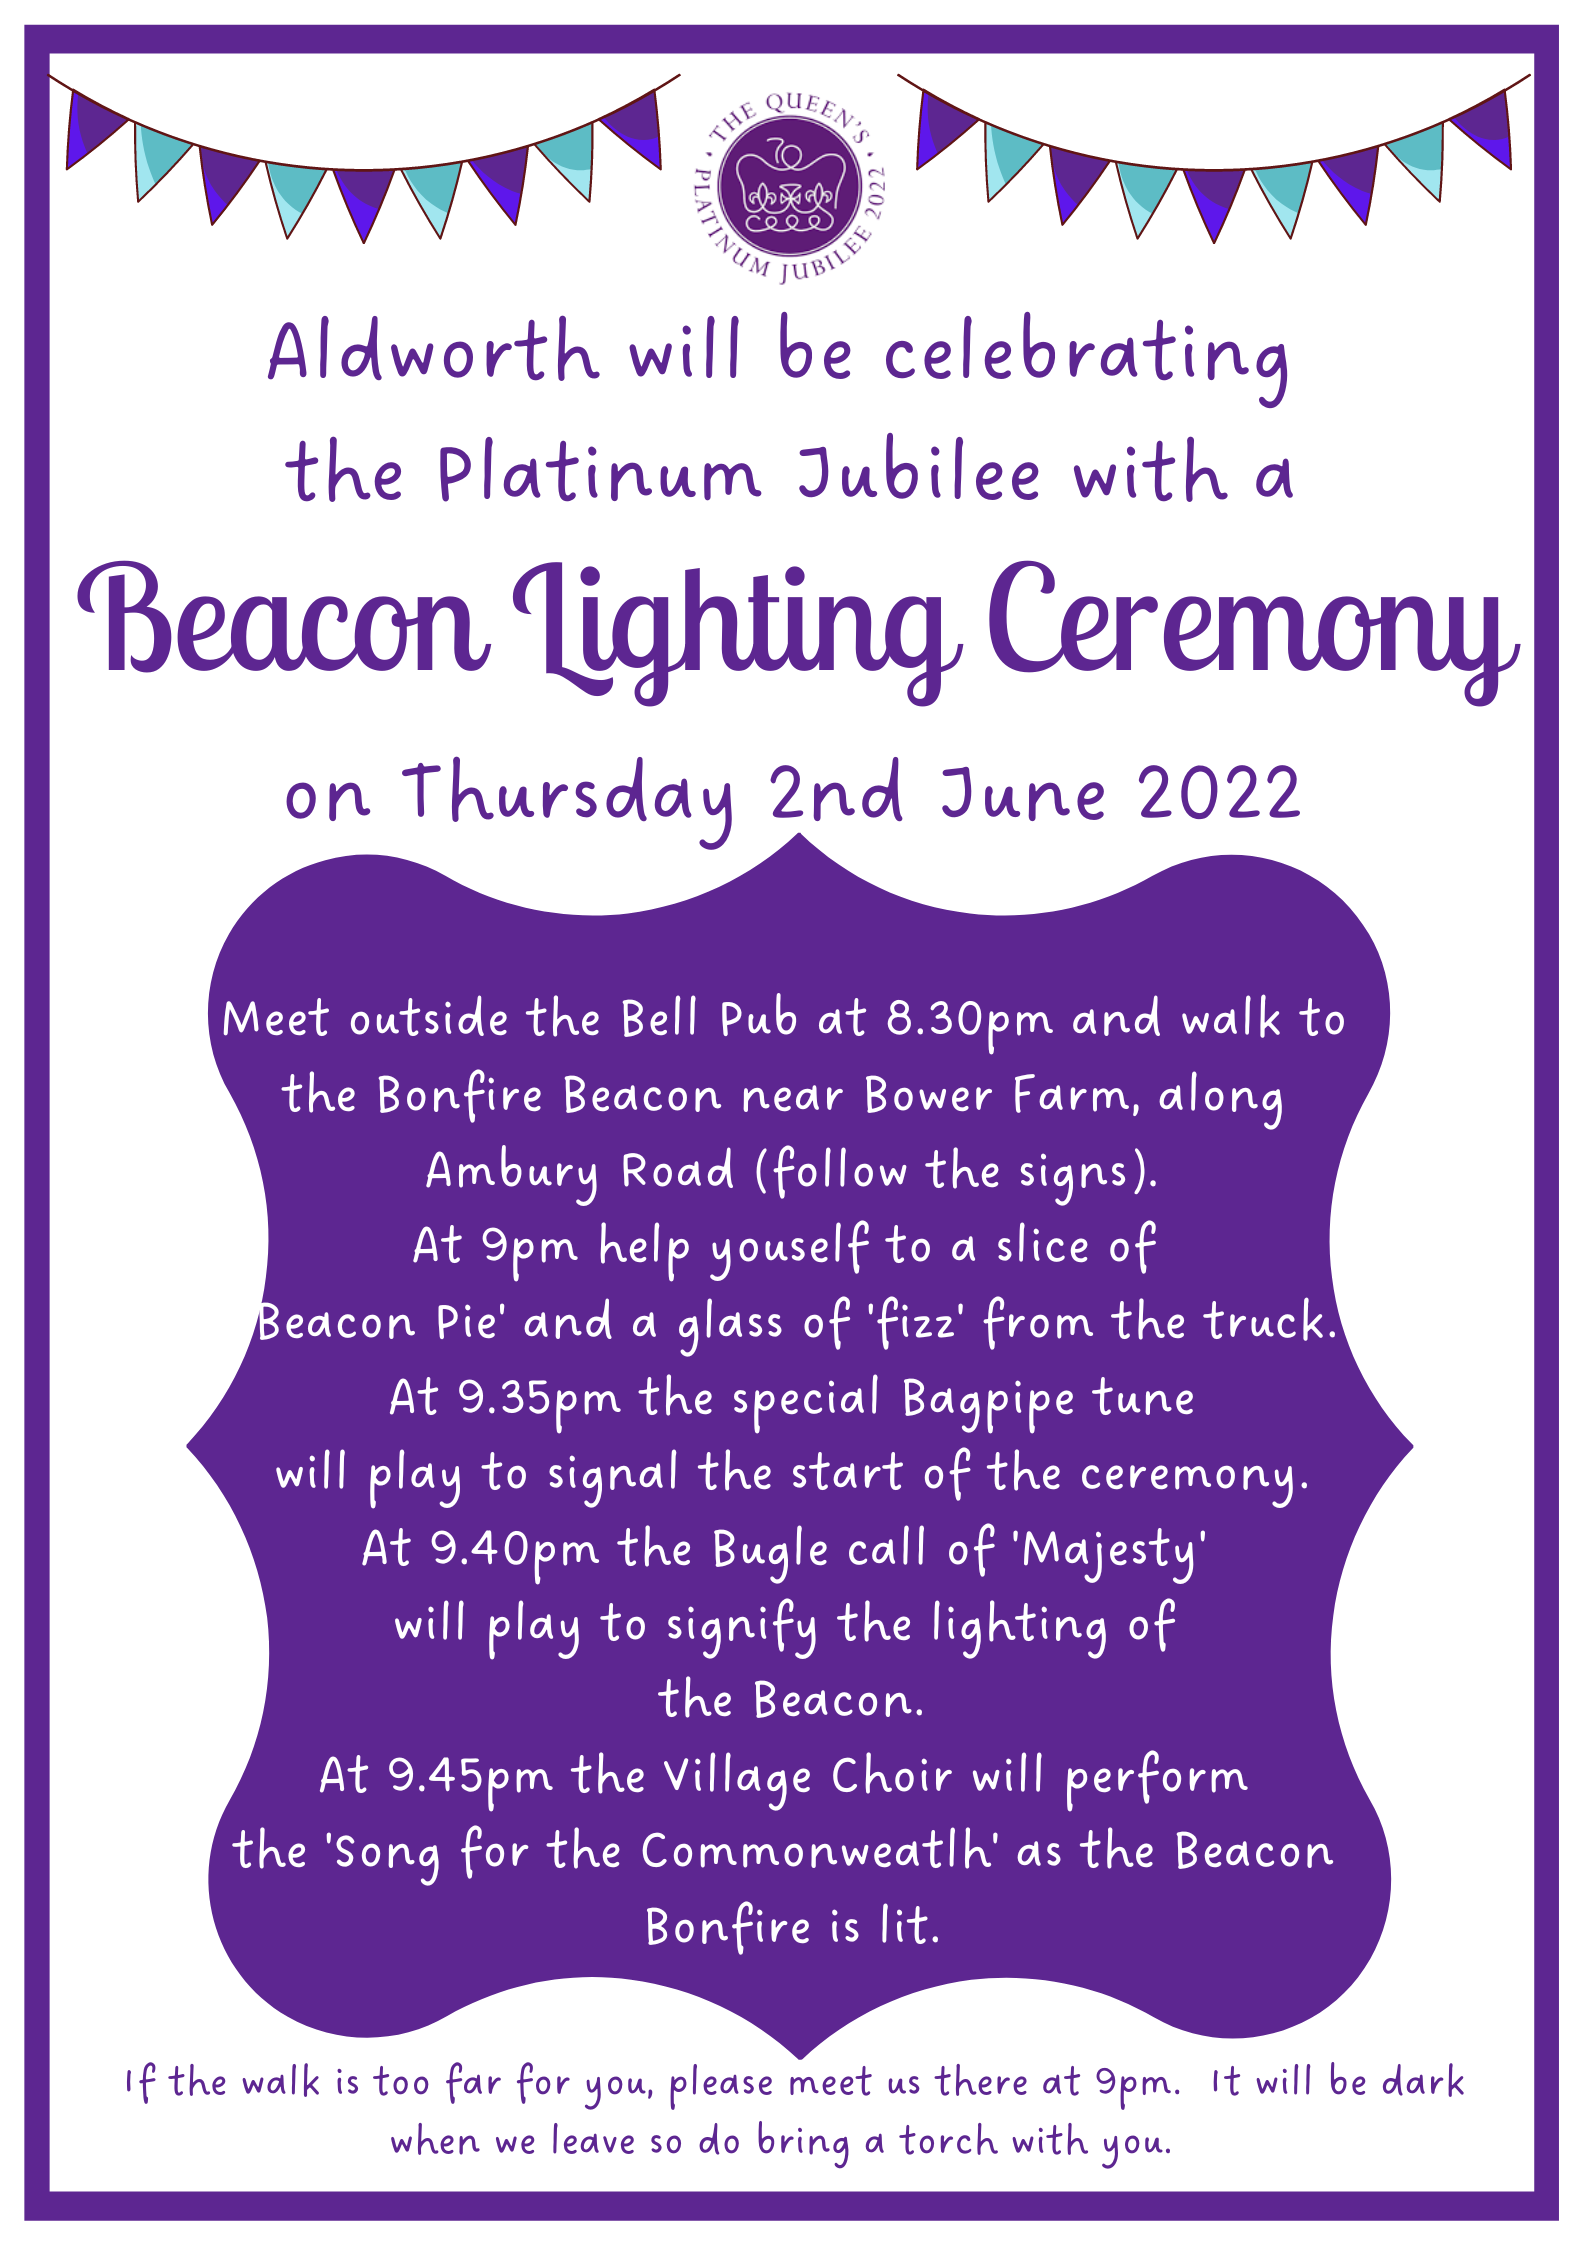 Aldworth Beacon Lighting Ceremony